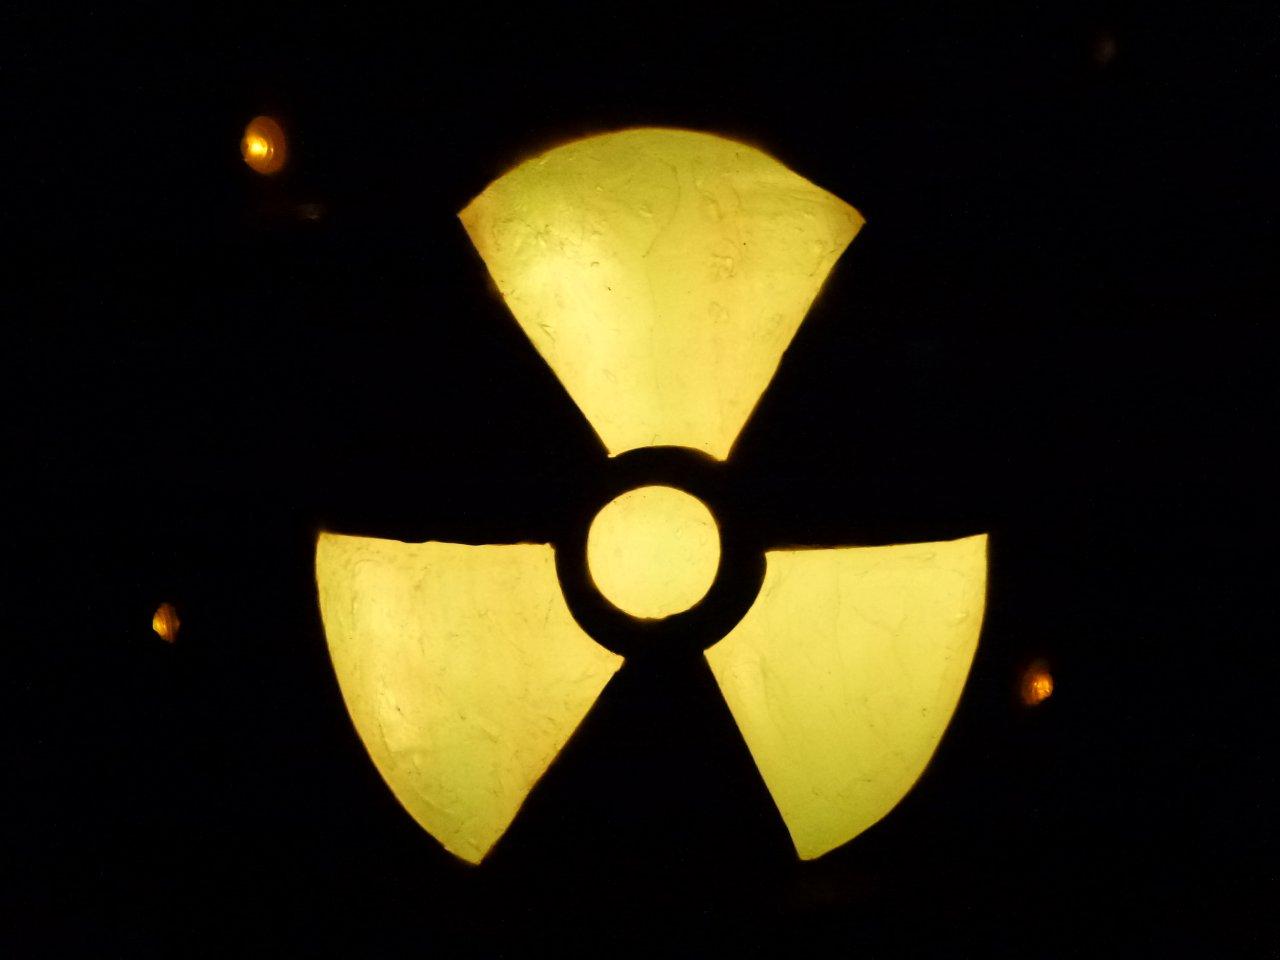 Neue Richtlinie zum nuklearen Terrorschutz tritt in Kraft: Sicherung radioaktiver Medizin-Stoffe gegen Diebstahl, Sabotage und die „schmutzige“ Bombe